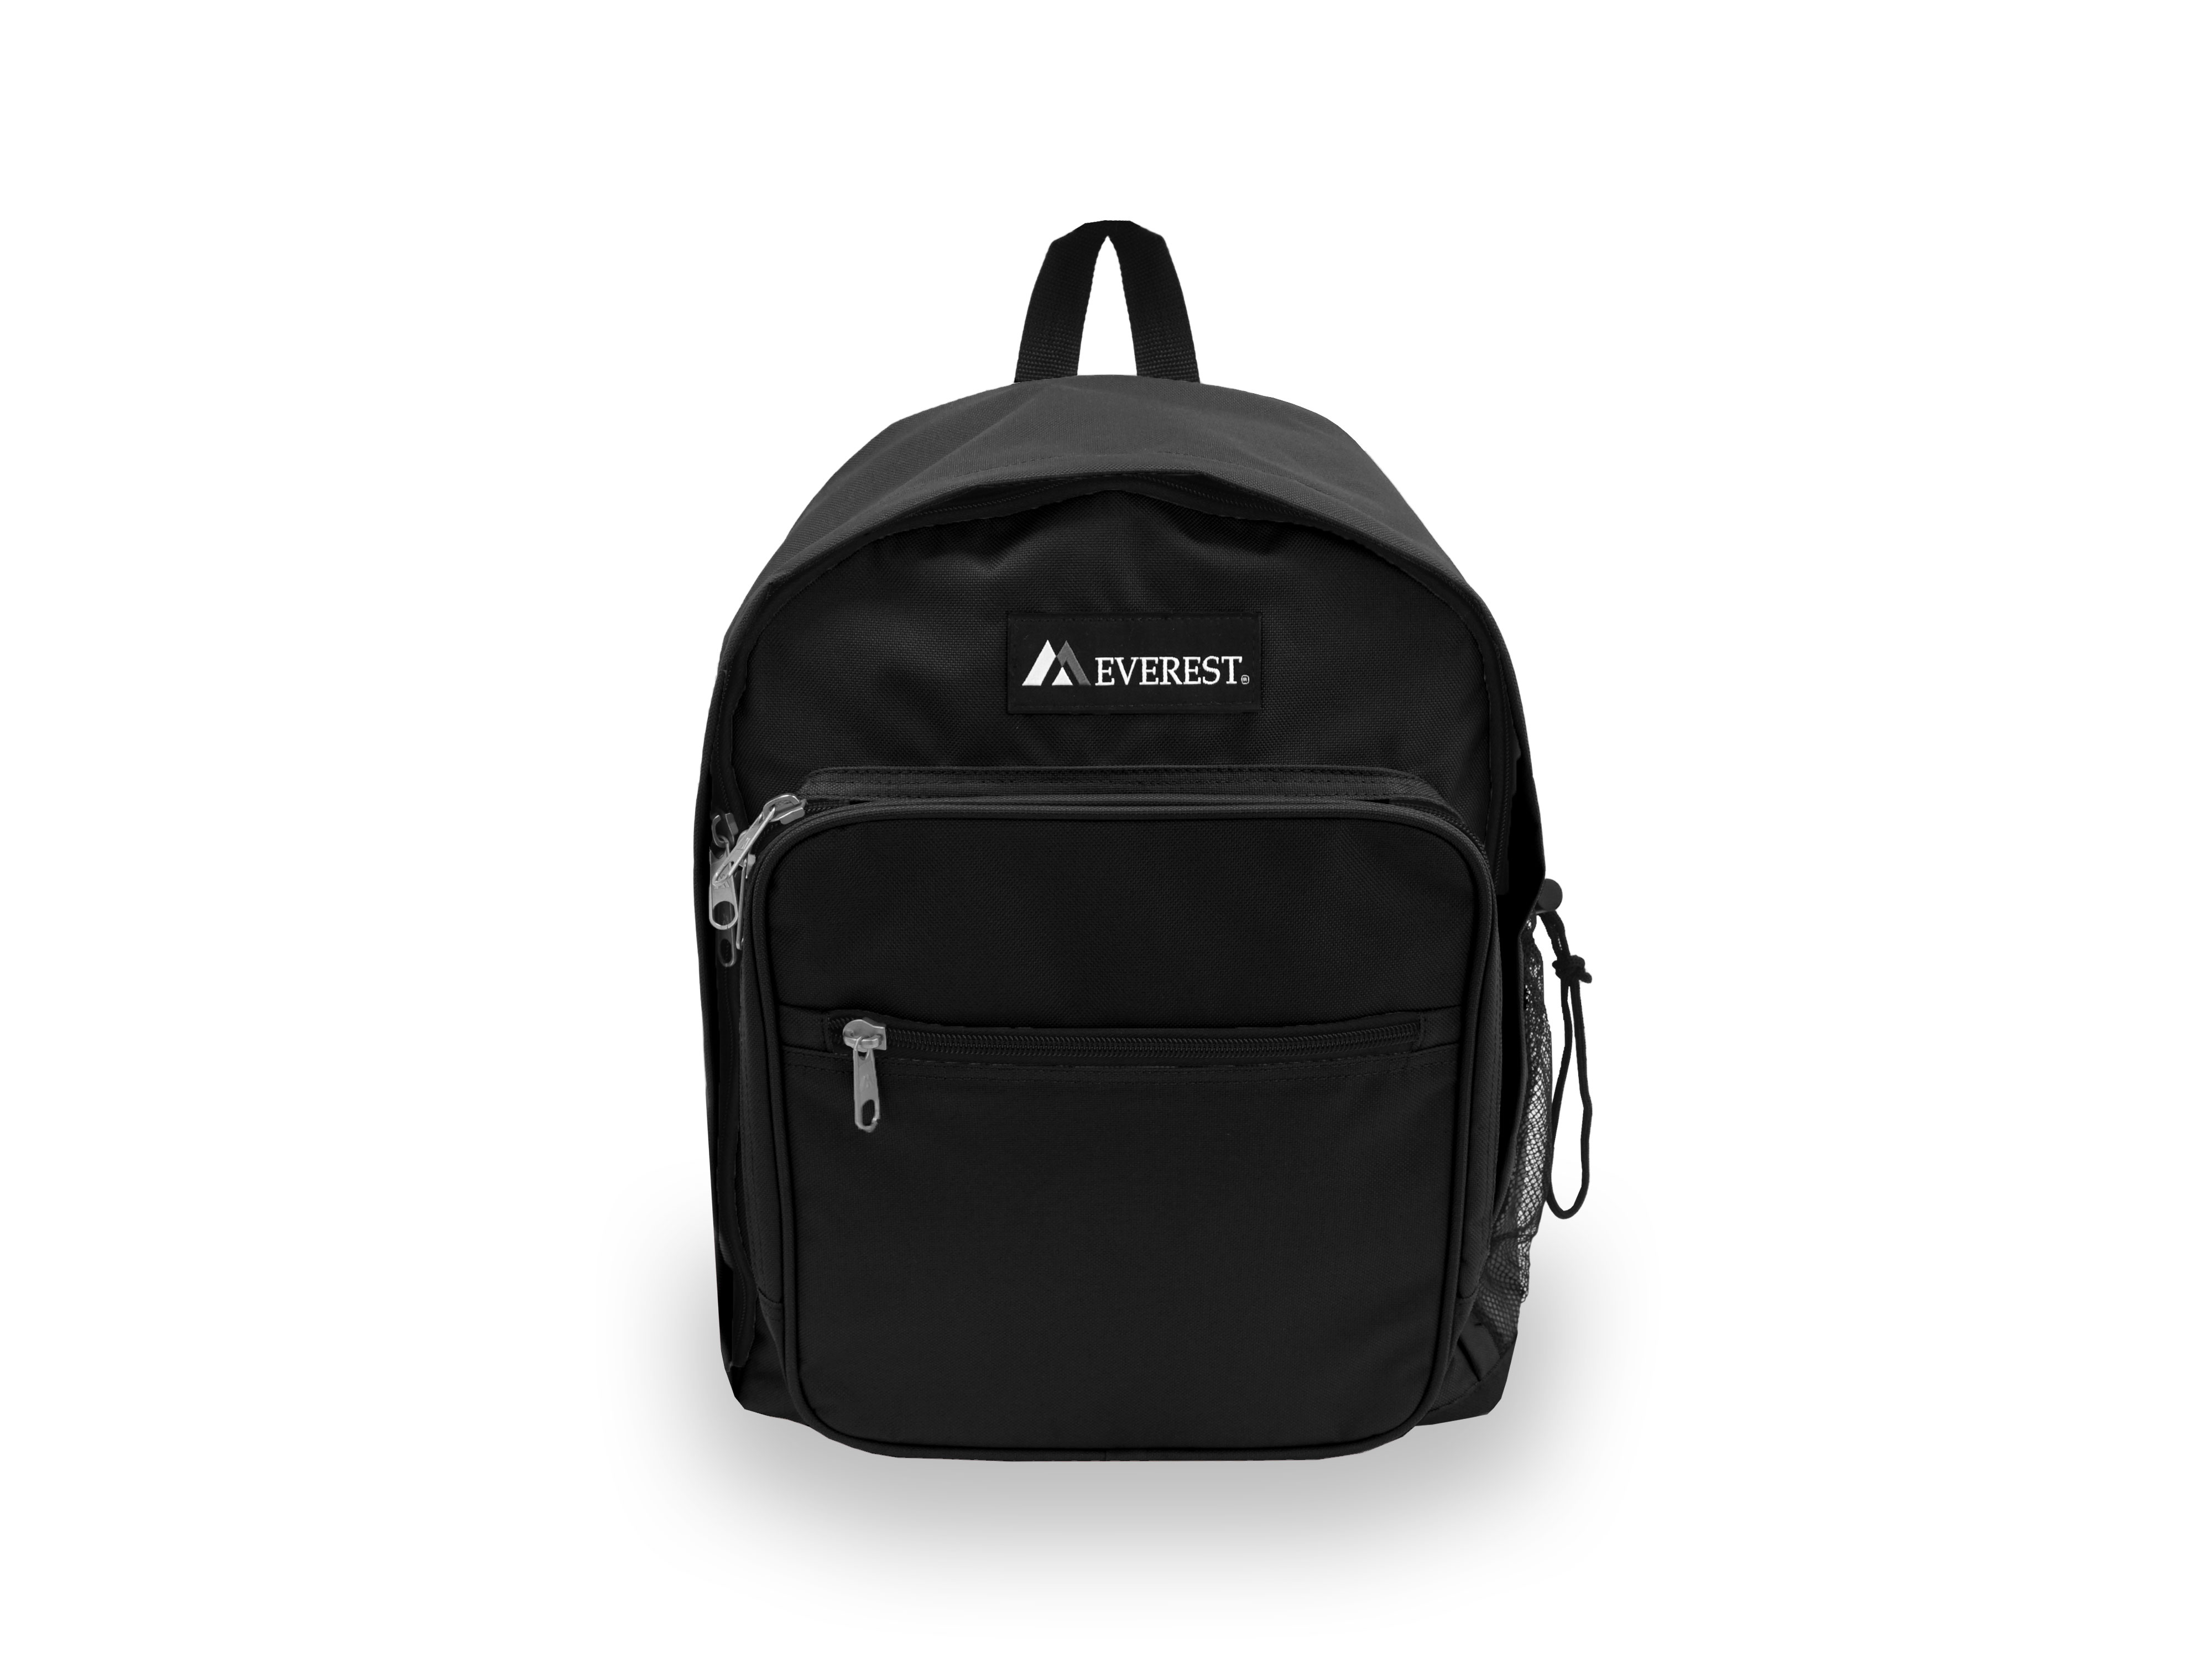 Everest Unisex Standard Backpack, Black - image 1 of 4